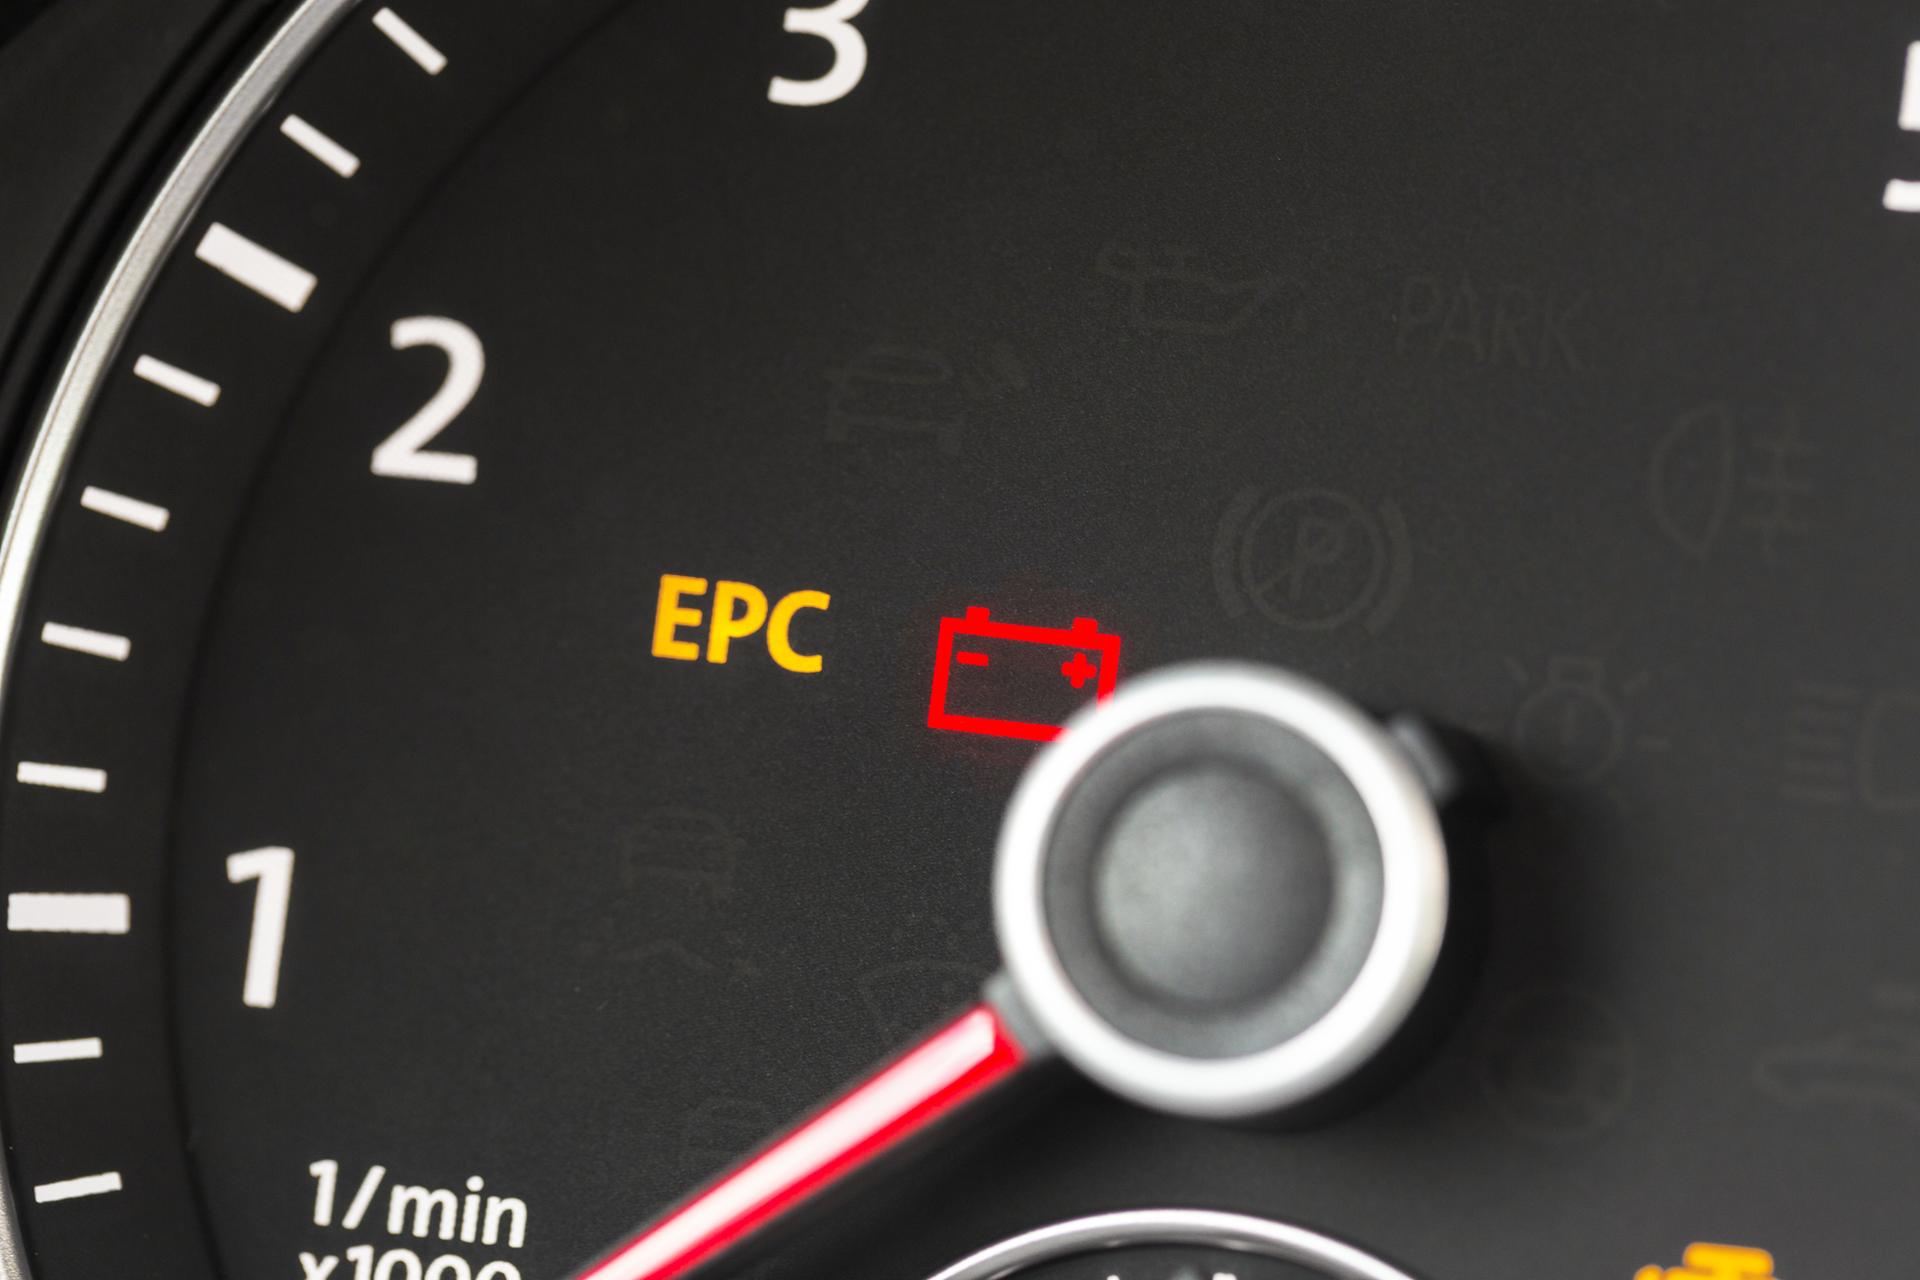 Co je to EPC v autě?